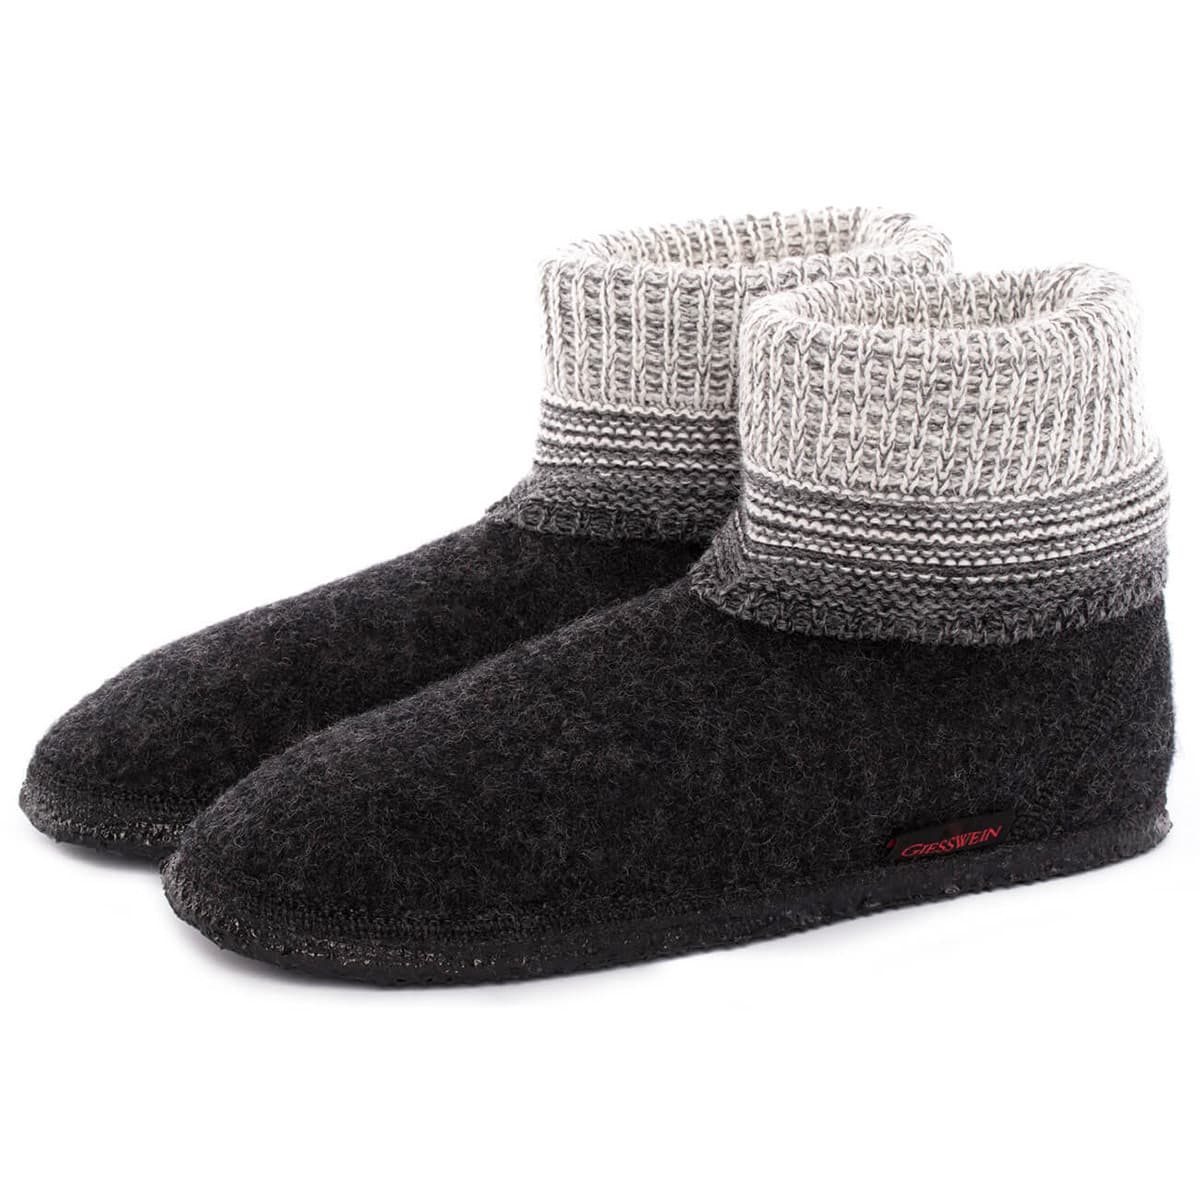 slippers in wool model Baumkirchen 